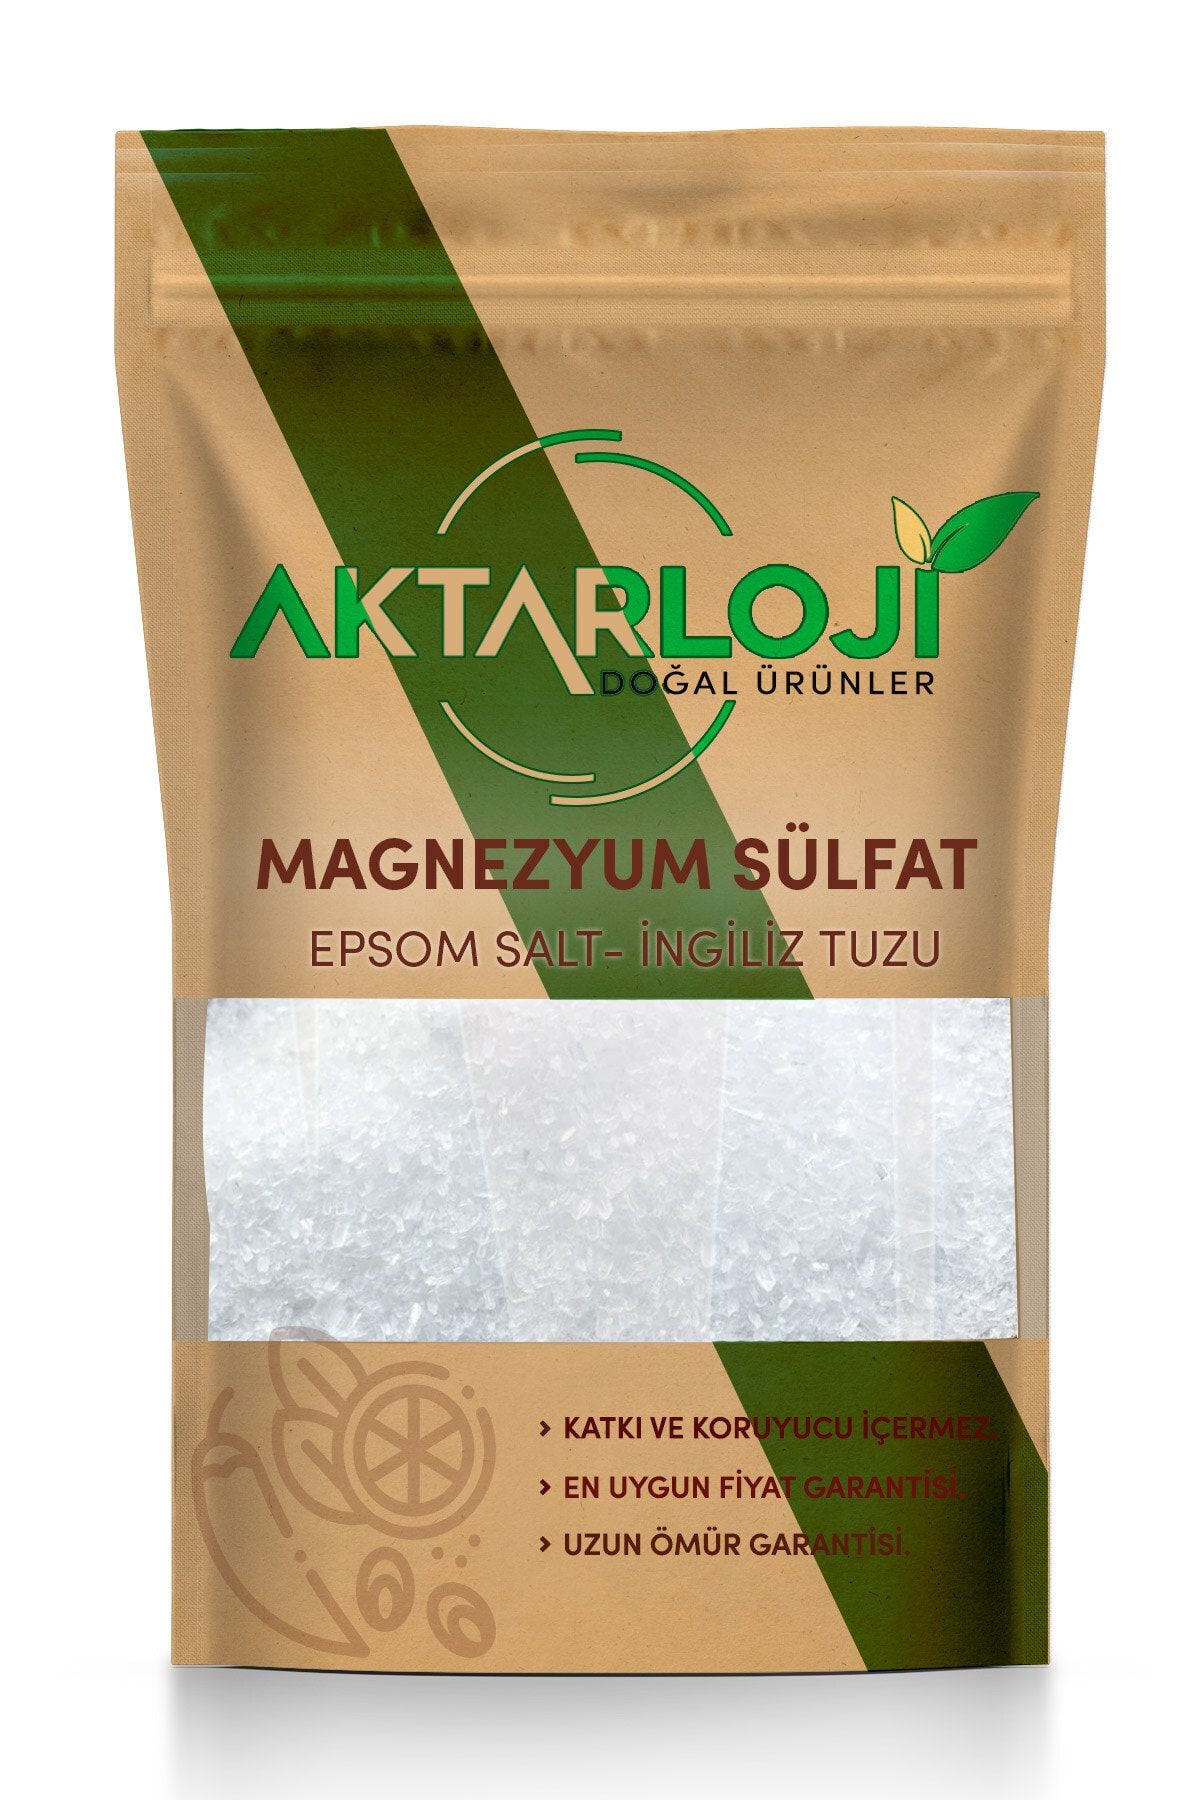 aktarloji 1 kg Magnezyum Sülfat, Ingiliz Tuzu, Epsom Salt (yenilebilir)